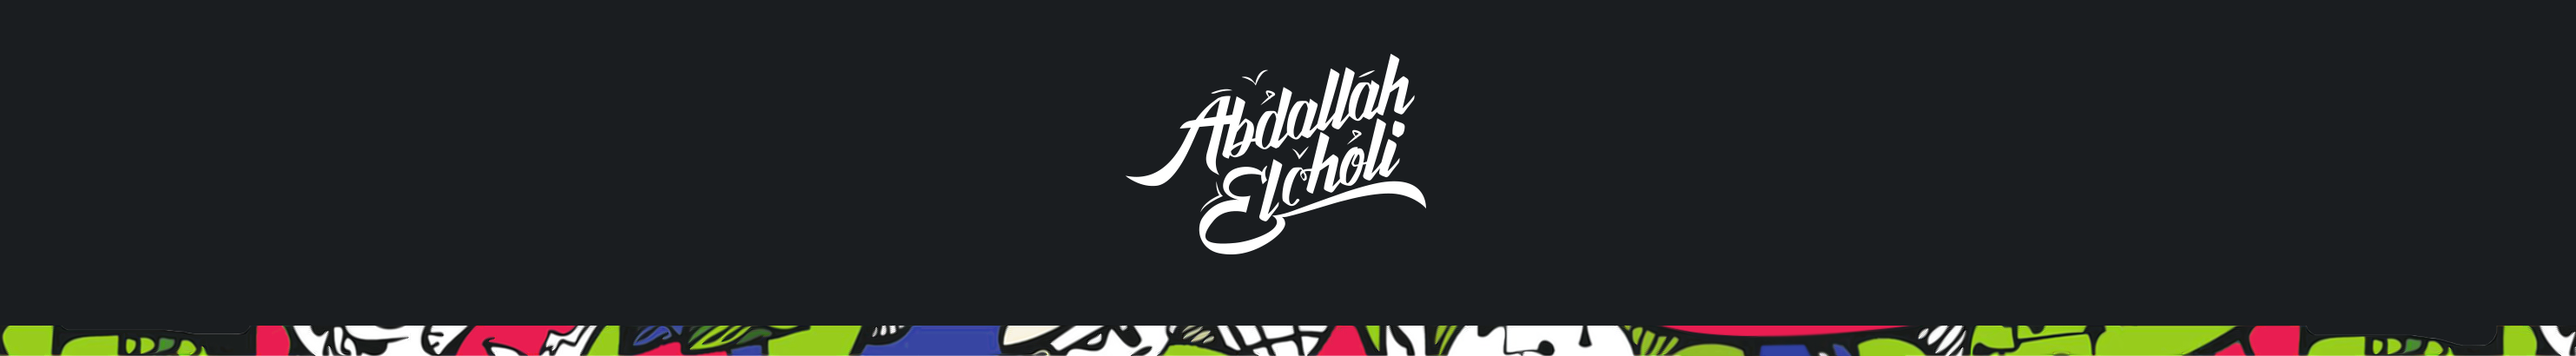 Banner de perfil de Abdallah El Choli